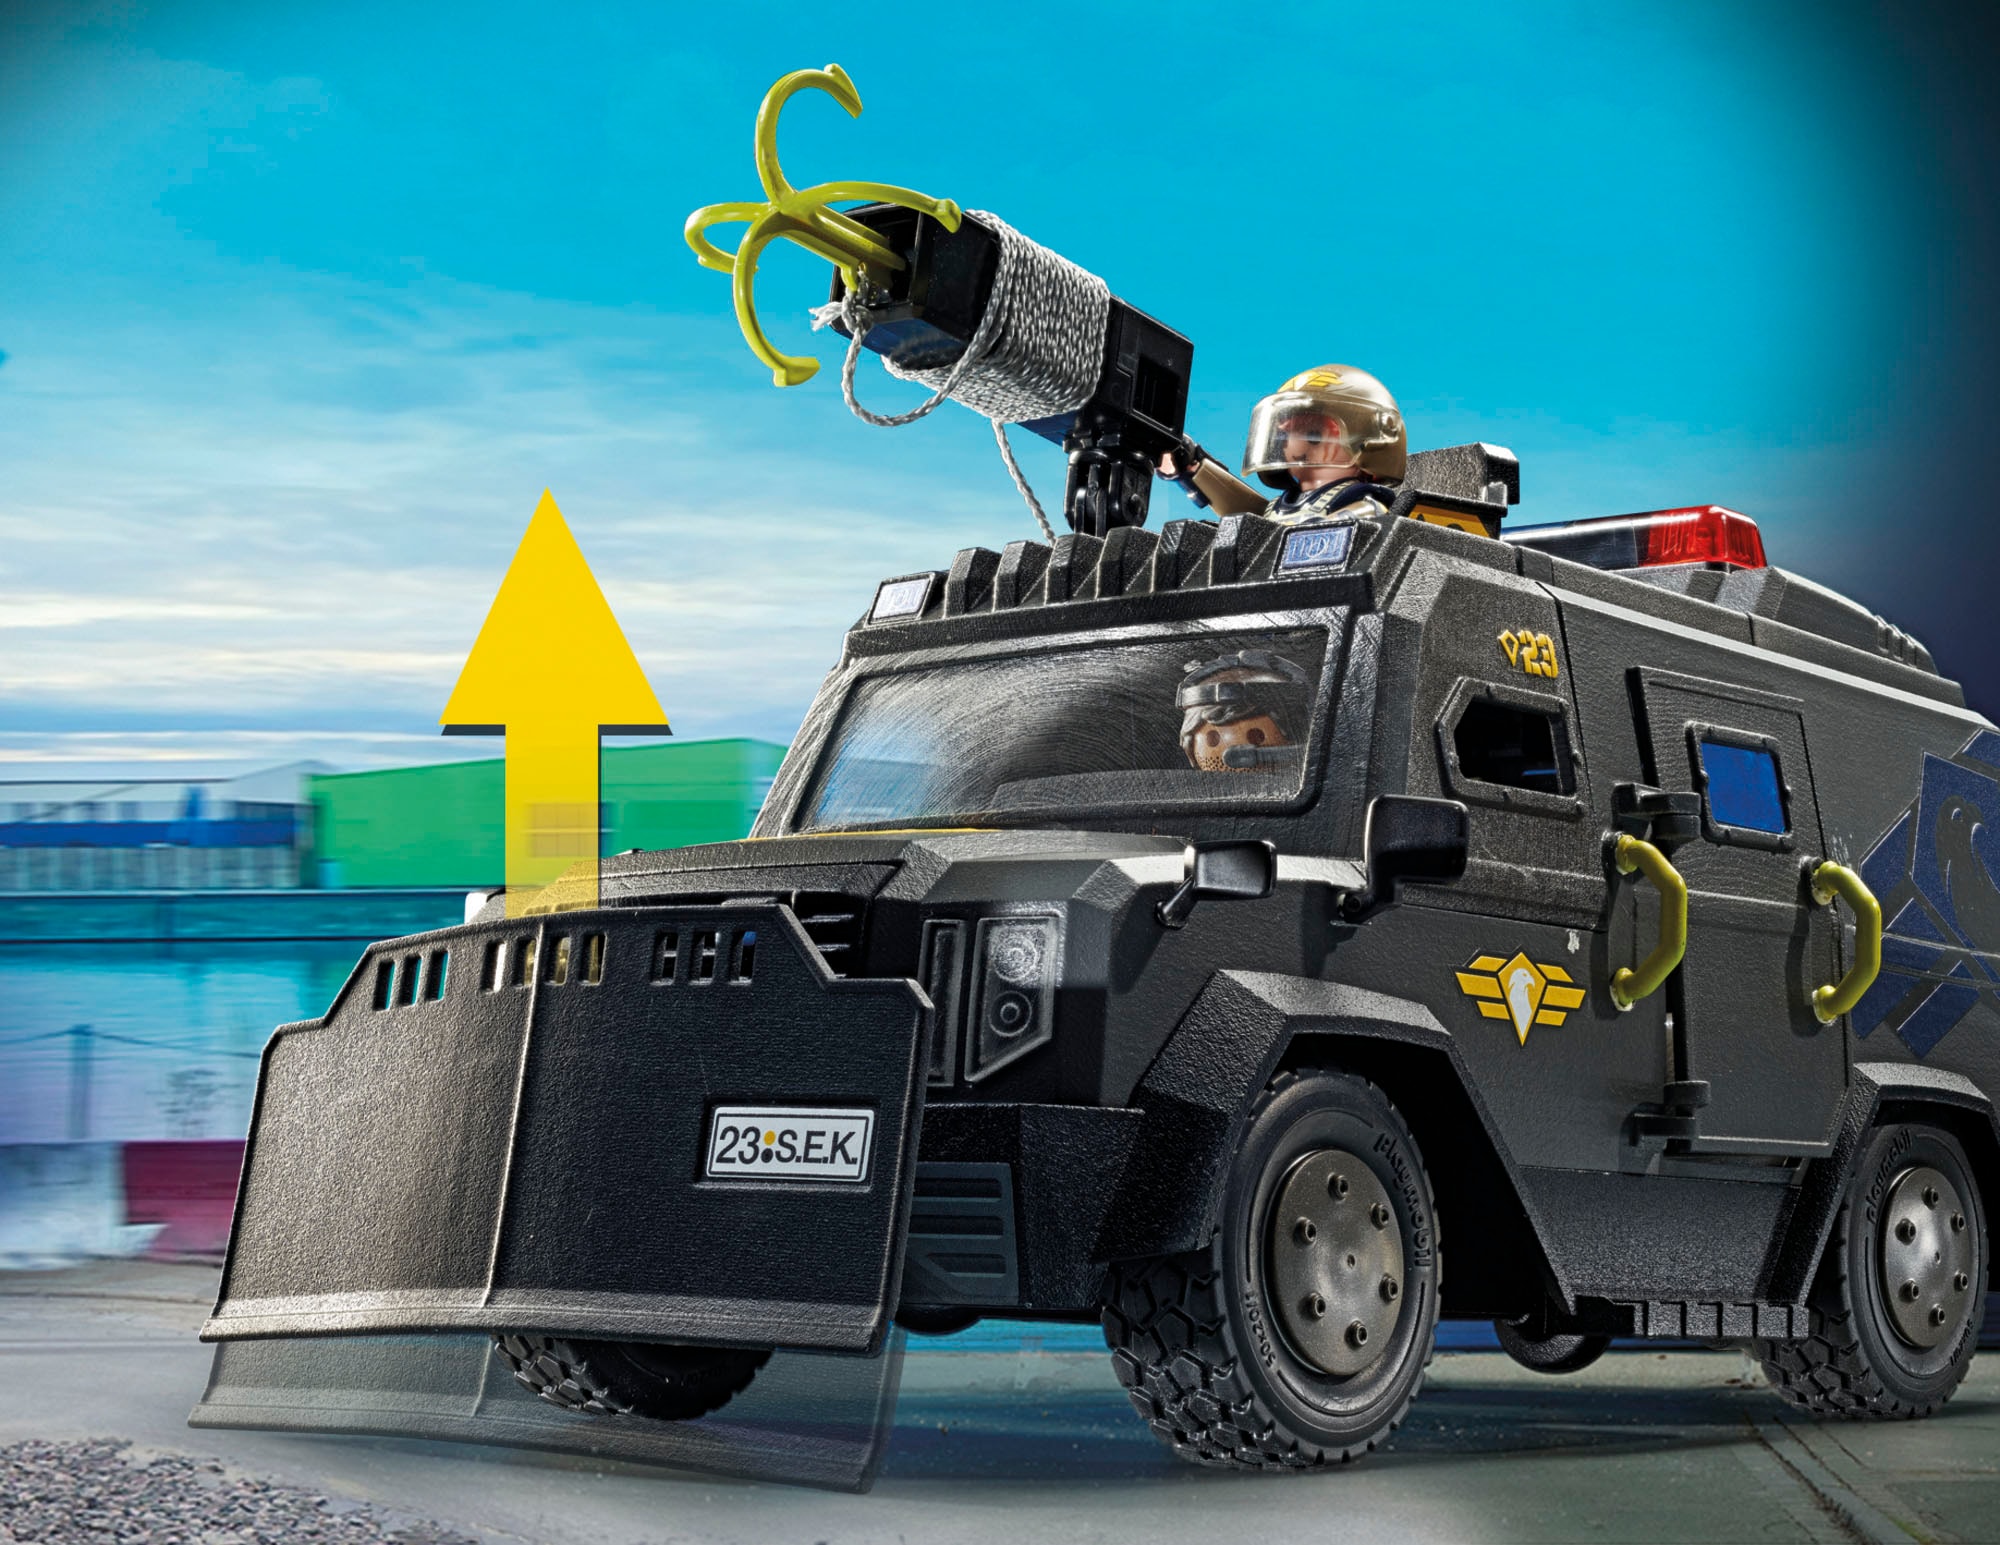 Playmobil® Konstruktions-Spielset »SWAT-Geländefahrzeug (71144), City Action«, (73 St.), Made in Europe; mit Licht und Sound